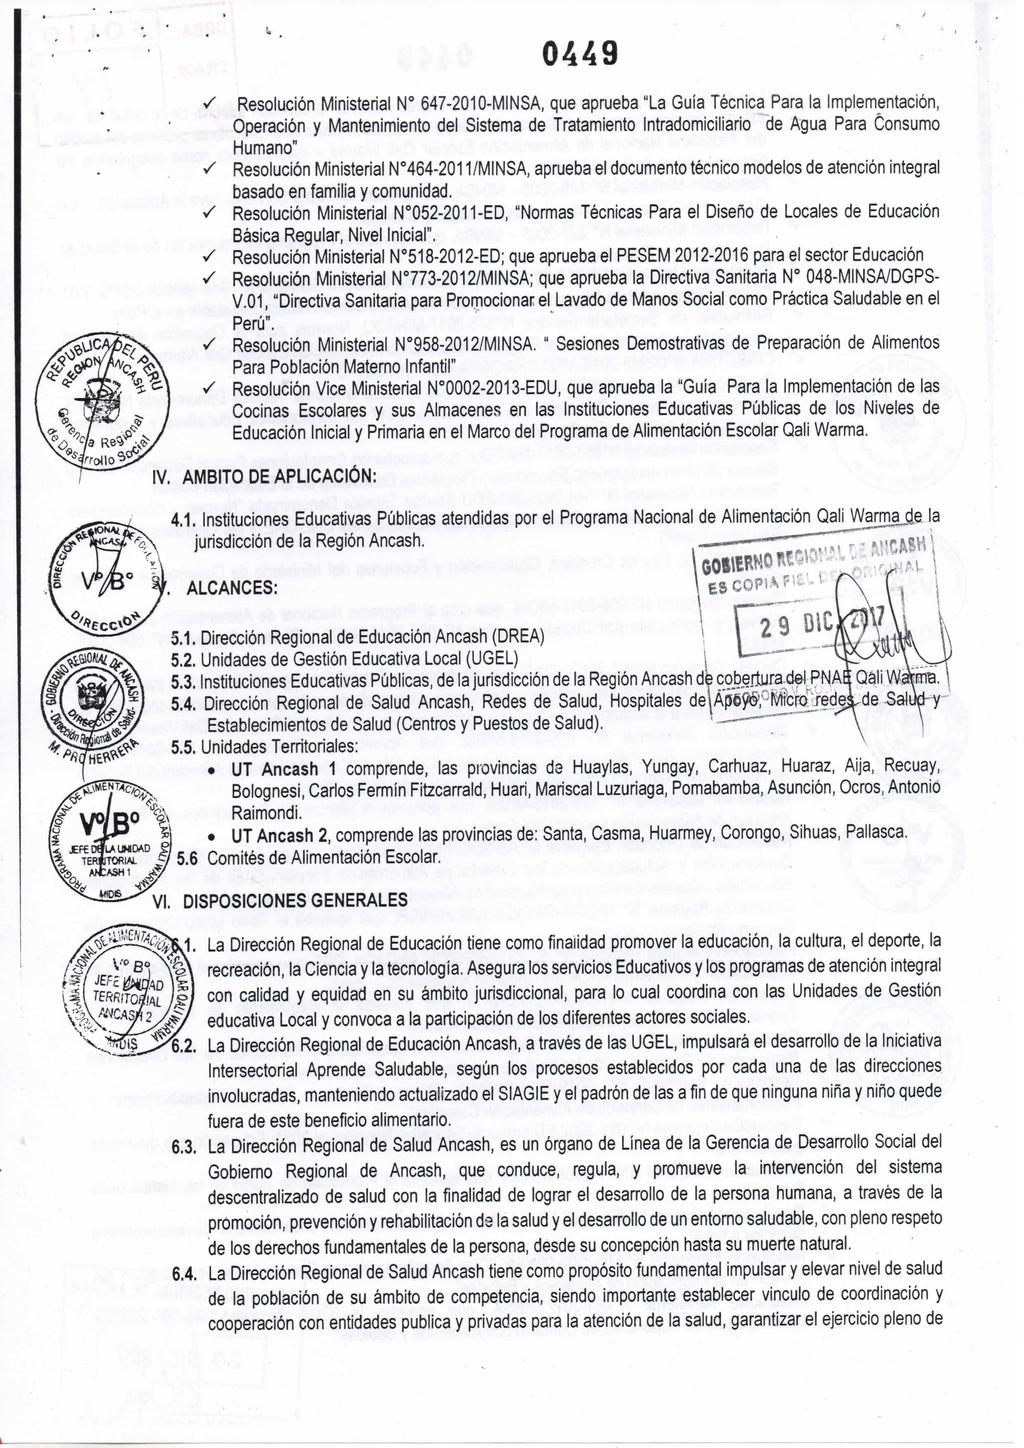 Resolución Ministerial N" 647-2010-MINSA, que aprueba "La Guía Técnica Para la Implementación, Operación Mantenimiento del Sistema de Tratamiento Intradomiciliario de Agua Para Consumo Humano"